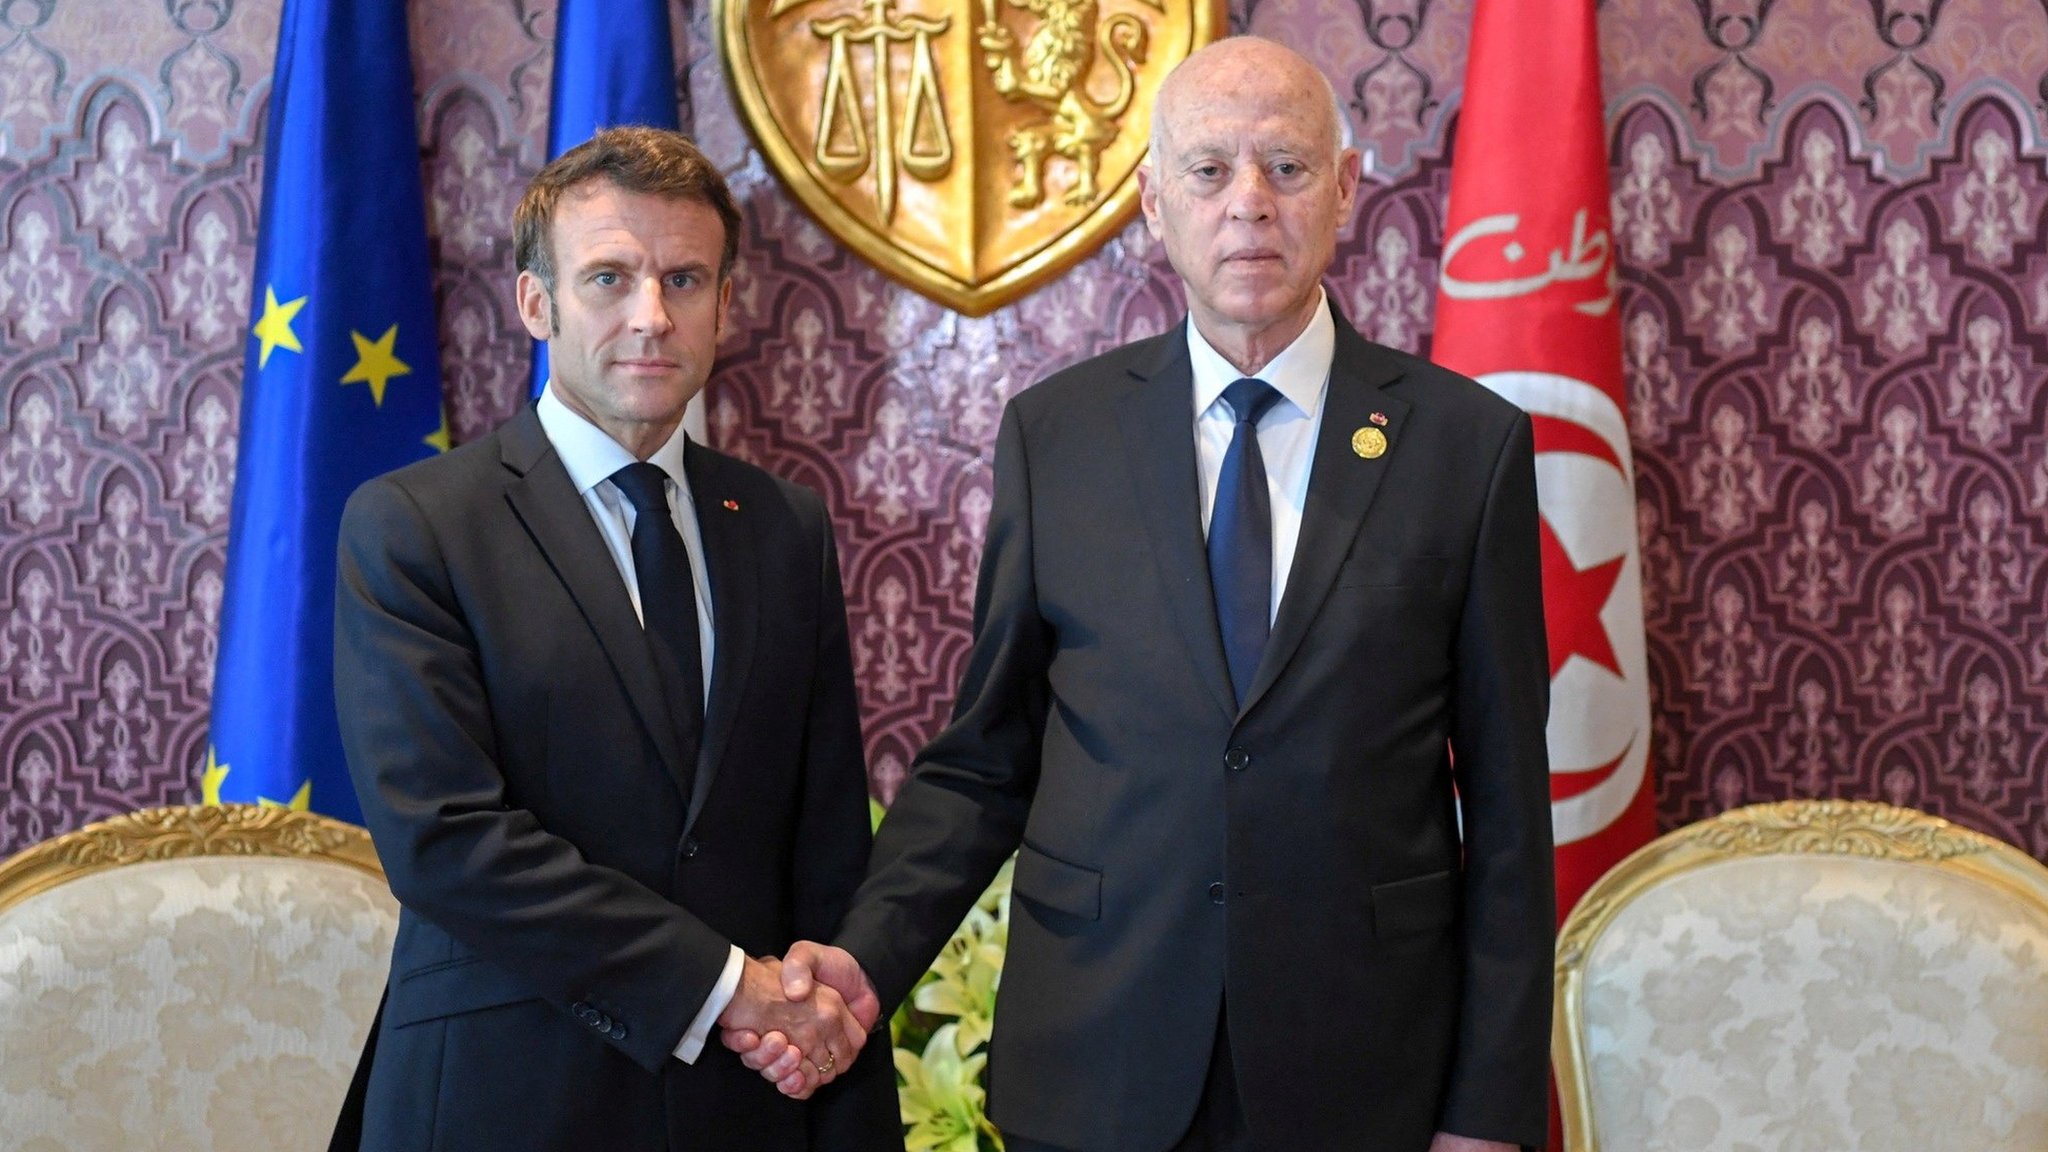 Reuters الرئيس التونسي، قيس سعيد، يلتقي بالرئيس الفرنسي إيمانويل ماكرون، في جربة، حيث تنعقد القمة الفرنكوفونية الثامنة عشرة، تونس، 19 نوفمبر 2022.